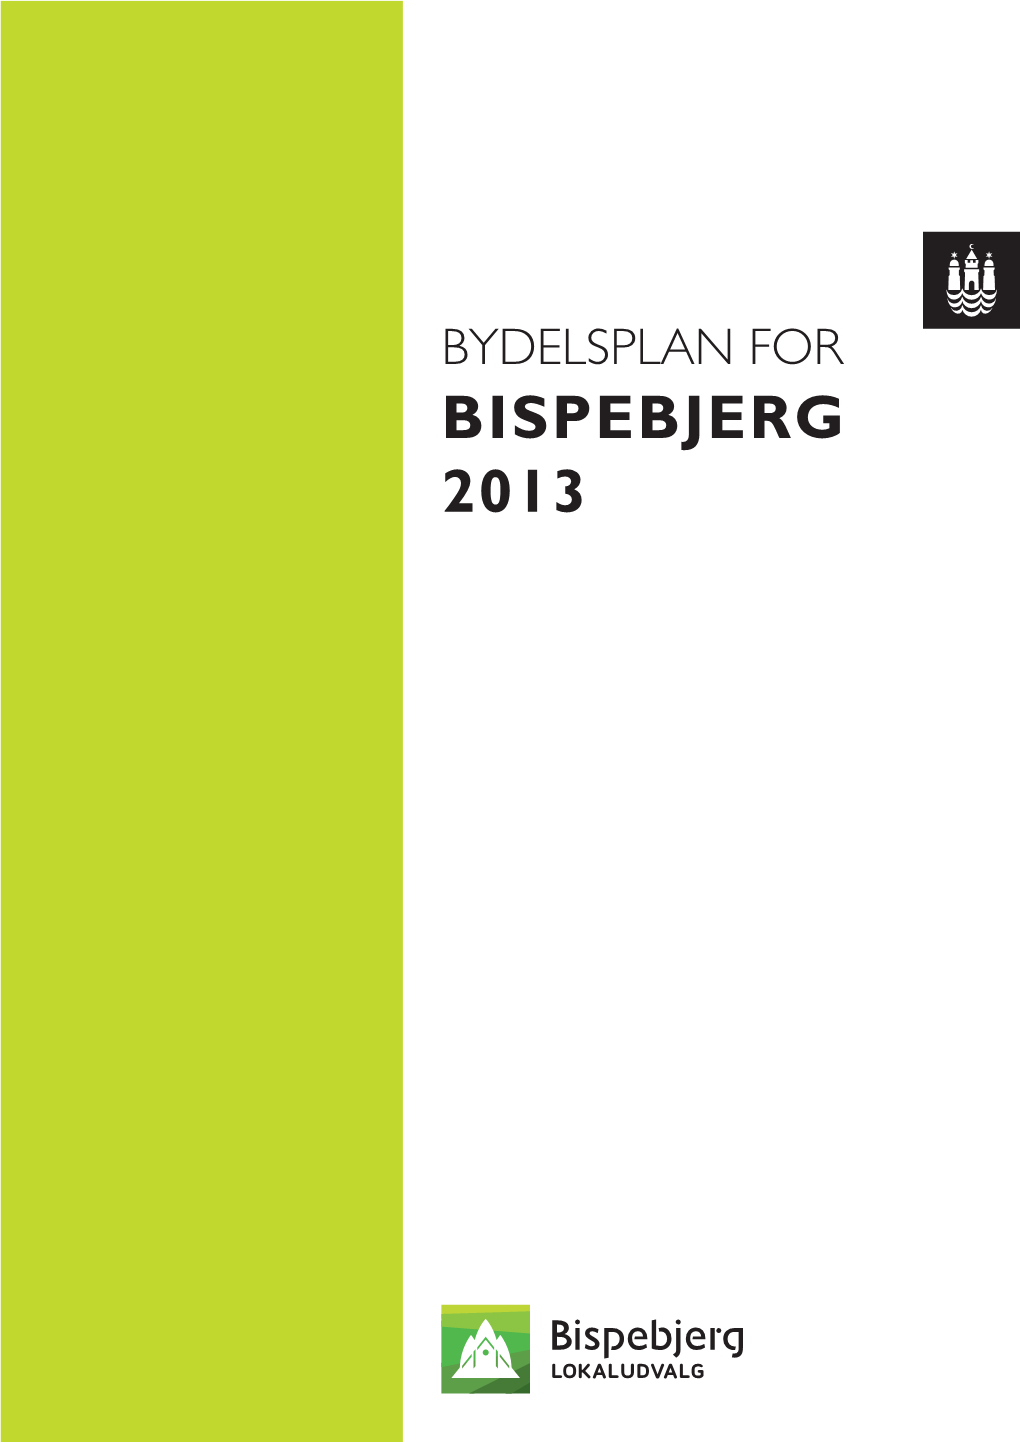 Bispebjerg 2013 Bydelsplan for Bispebjerg